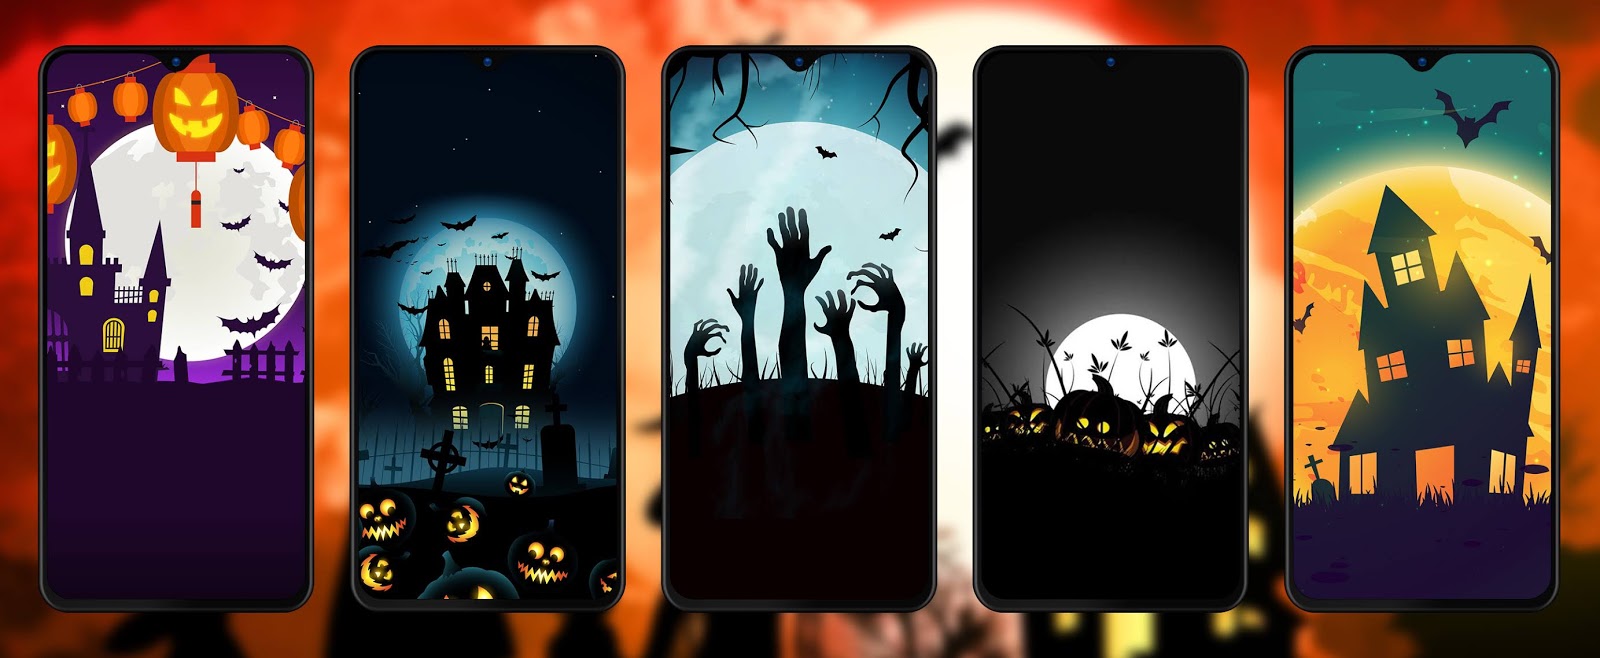 [Wallpaper] Halloween Wallpaper for your Smartphone